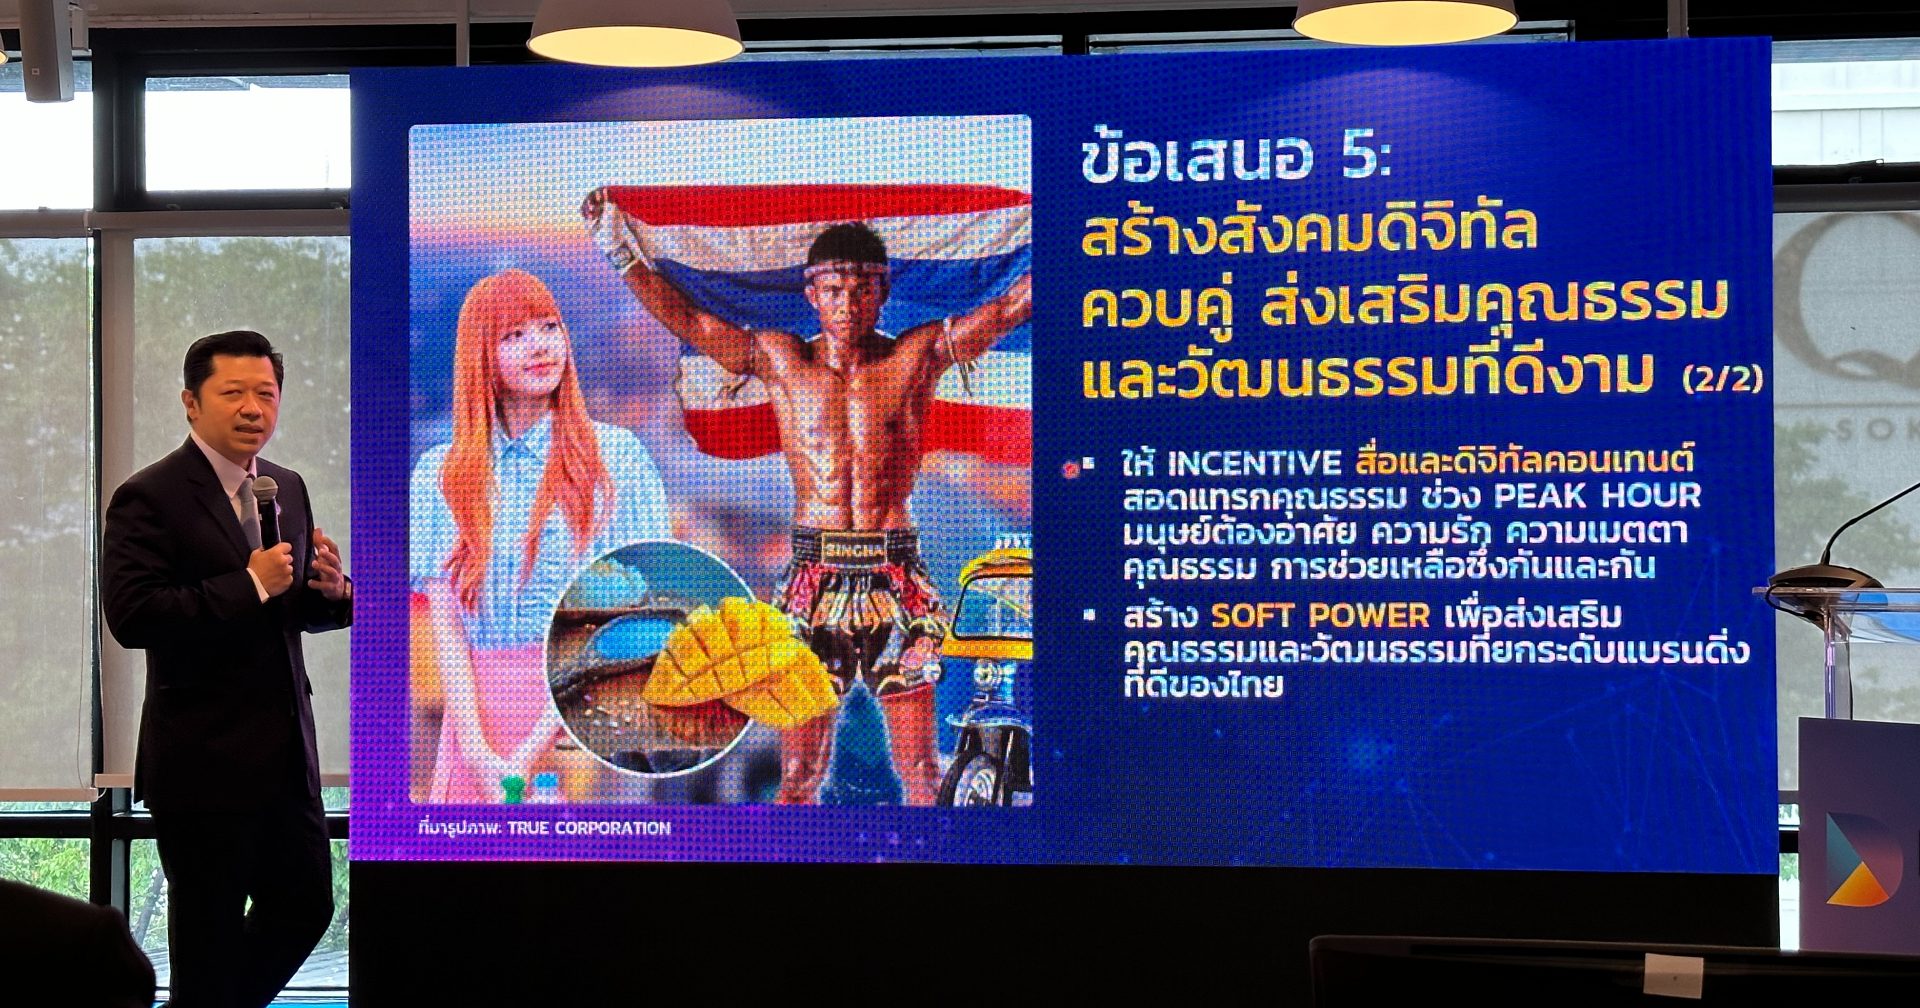 โค้งสุดท้ายเลือกตั้ง ศุภชัย เจียรวนนท์ แนะ 7 ข้อเสนอรัฐบาลใหม่ เปลี่ยนผ่านสู่ไทยแลนด์ 5.0